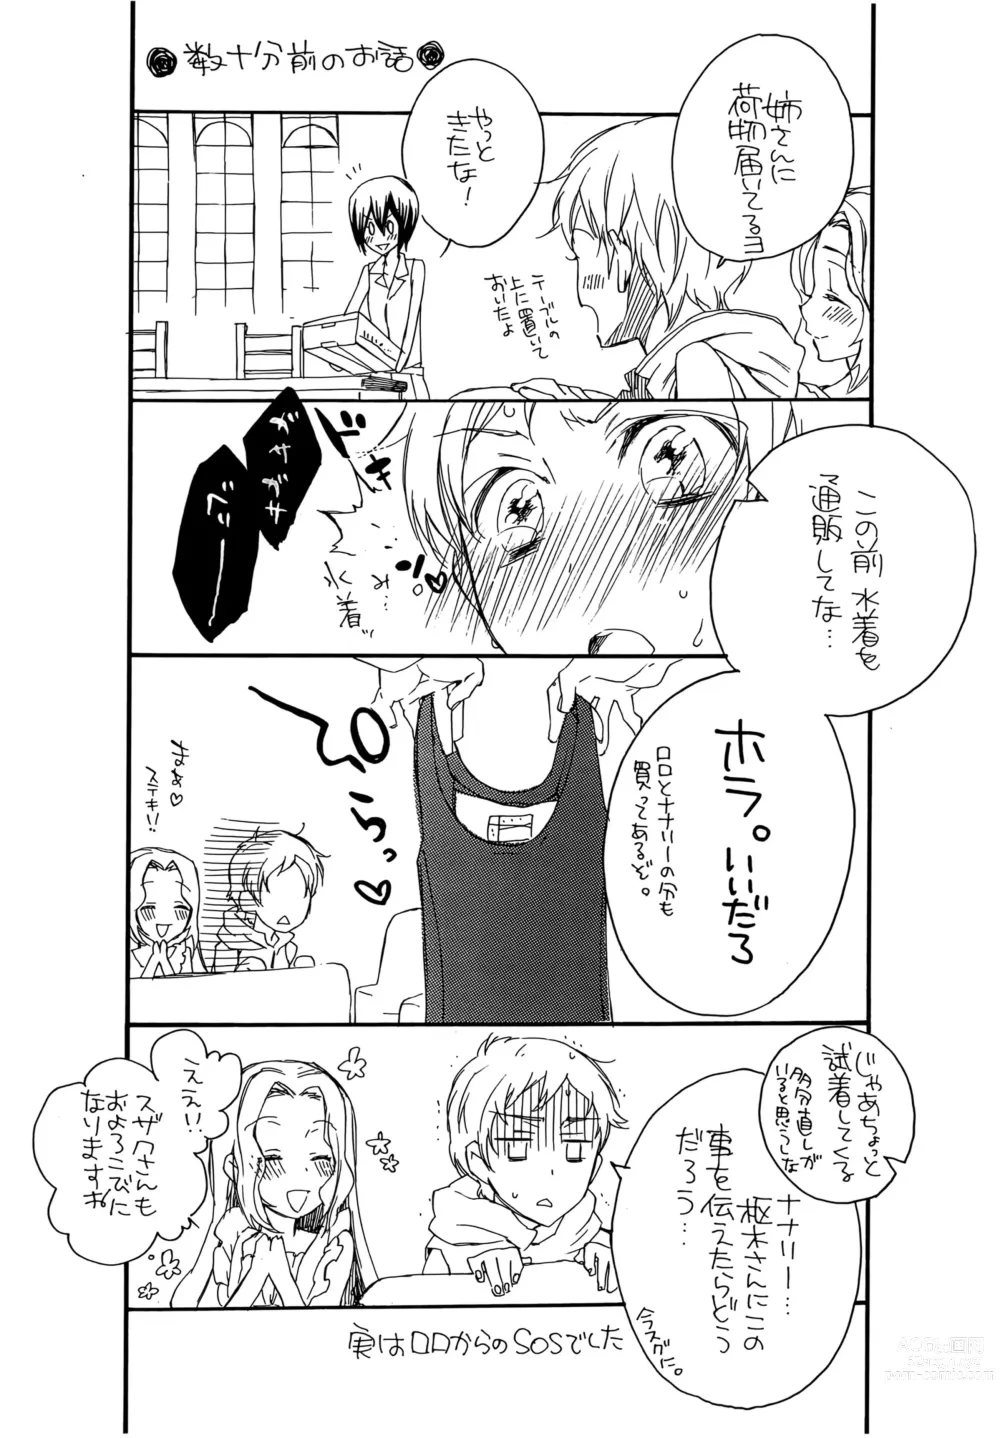 Page 7 of doujinshi Natsu Nyota Side Peta.